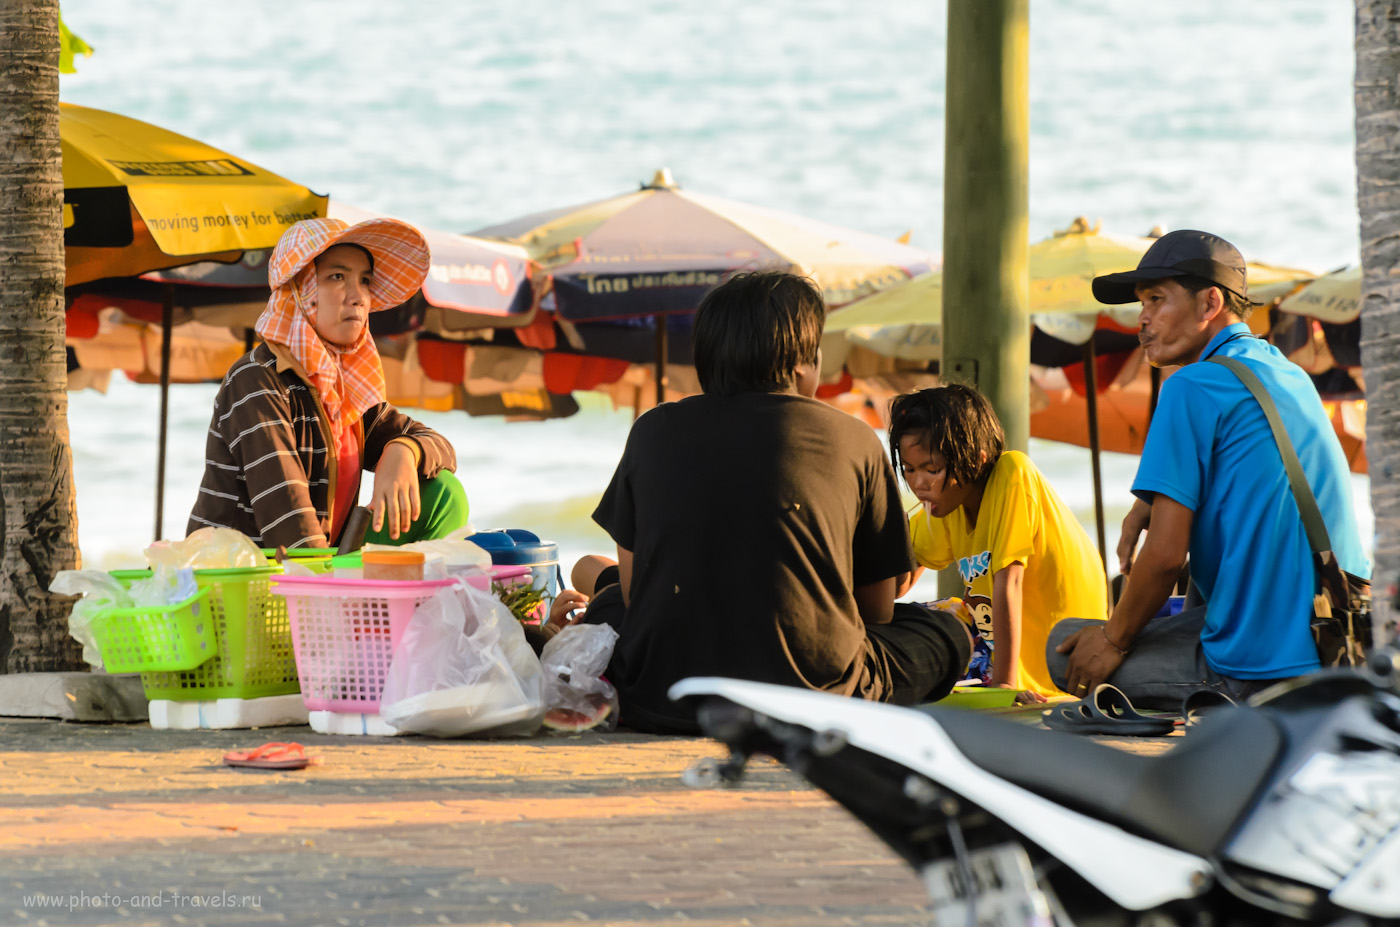 25. Местные жители Паттайи. Прогулка по пляжу Джомтьен (Jomtien beach). Отзывы об отдыхе в Таиланде. (AF-S VR Zoom-Nikkor 70-300mm f/4.5-5.6G IF-ED, 1/250 сек, 0 eV, приоритет диафрагмы, f/5.3, 195 мм, 400)